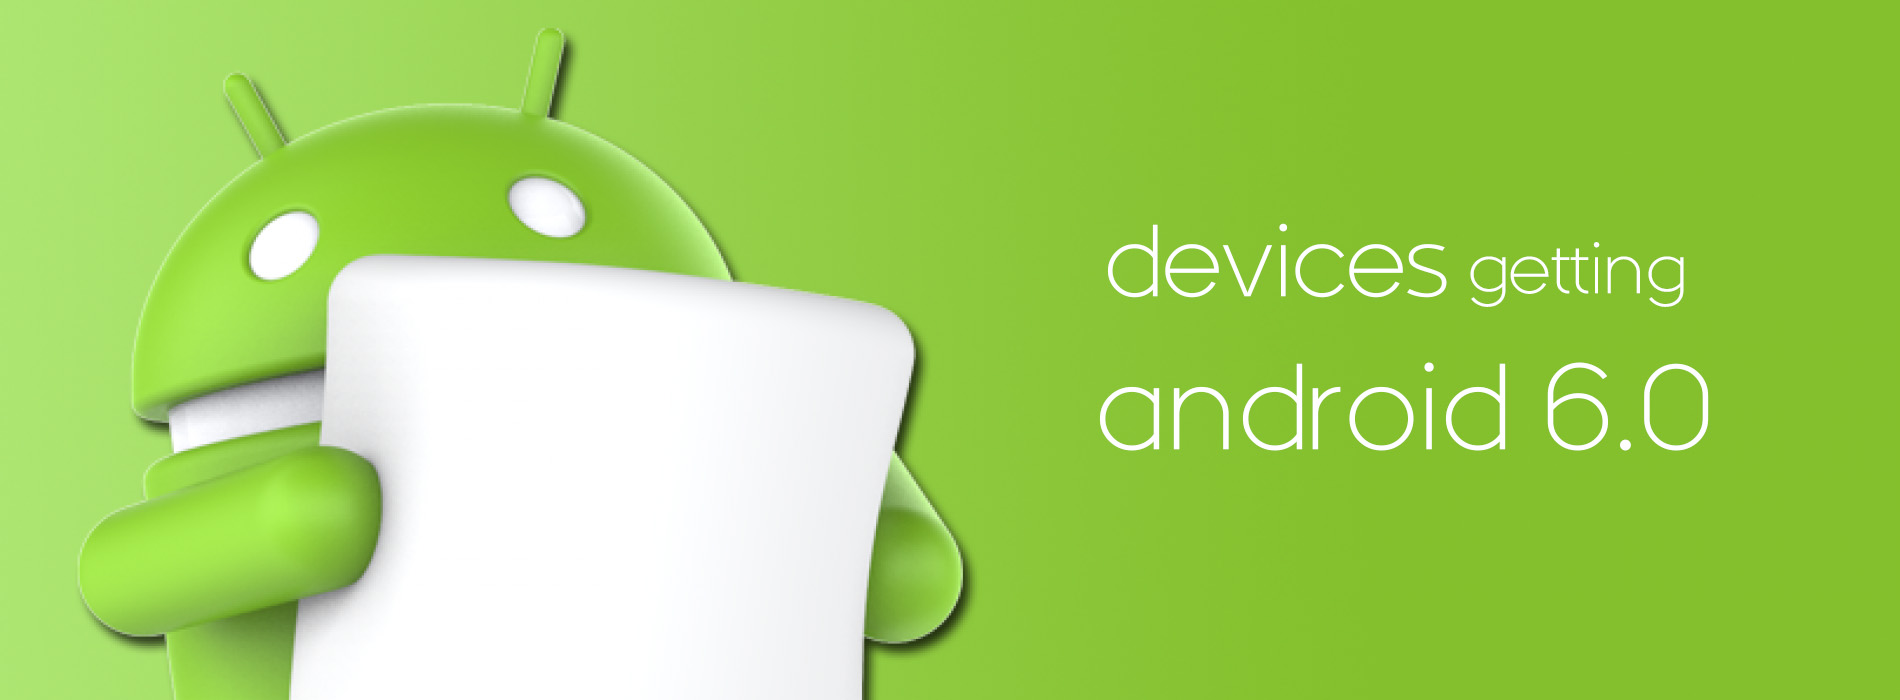 Android Marshmallow. Android 6 Marshmallow. 6.0 Marshmallow. Android 6.0 Marshmallow logo. Says device